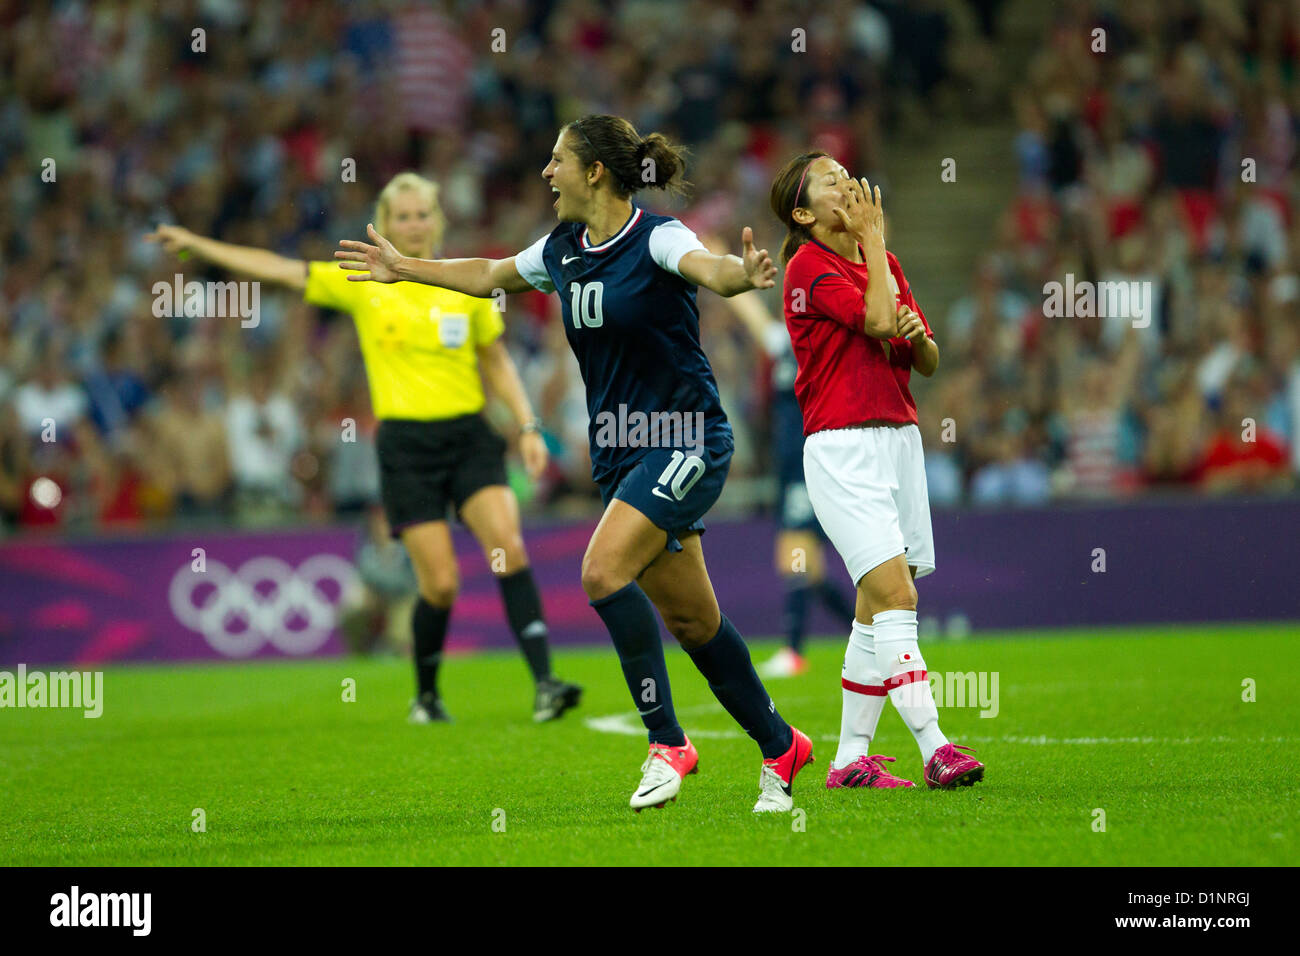 Carli Lloyd (USA)-10 -USA remporte l'or sur le Japon en femmes Football (soccer) aux Jeux Olympiques d'été, Londres 2012 Banque D'Images